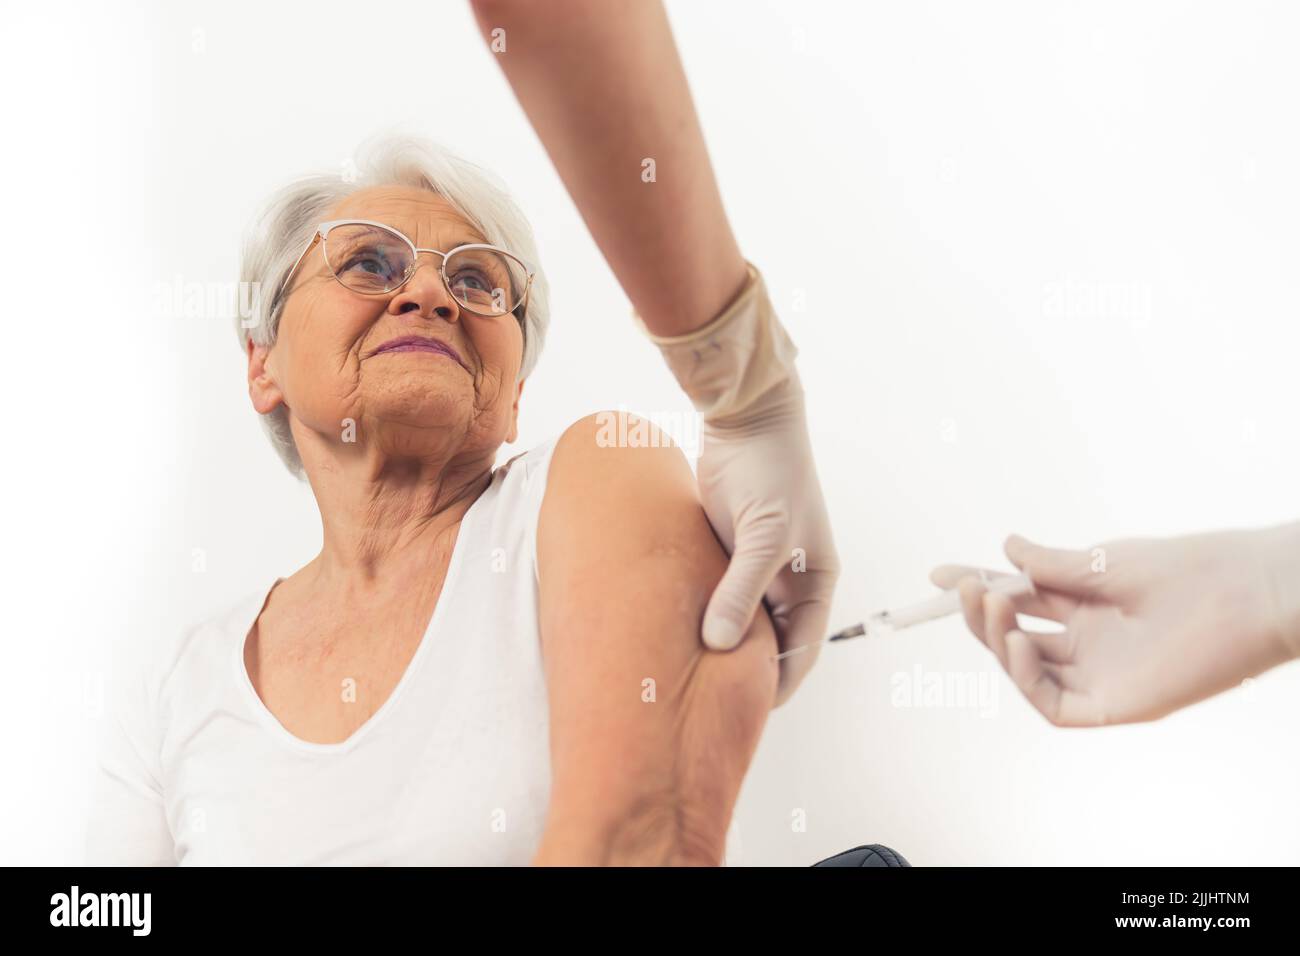 Una vecchia donna felicissima dai capelli grigi che riceve un vaccino per proteggersi dal virus. Foto di alta qualità Foto Stock